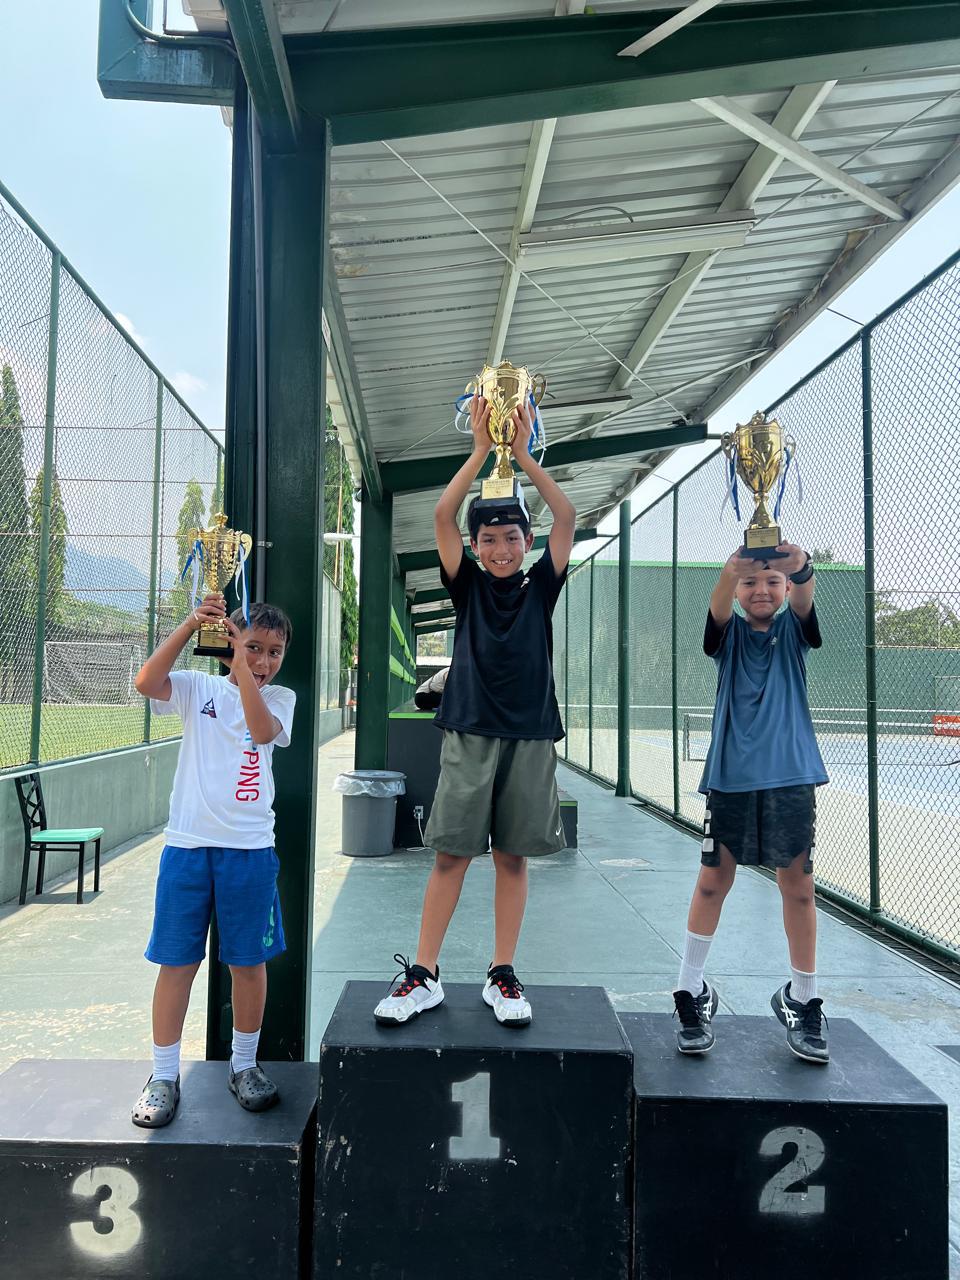 ¡Sonrisa de campeones! San Pedro Sula vibró con el torneo de Tenis y los ganadores posaron con Daniela Obando